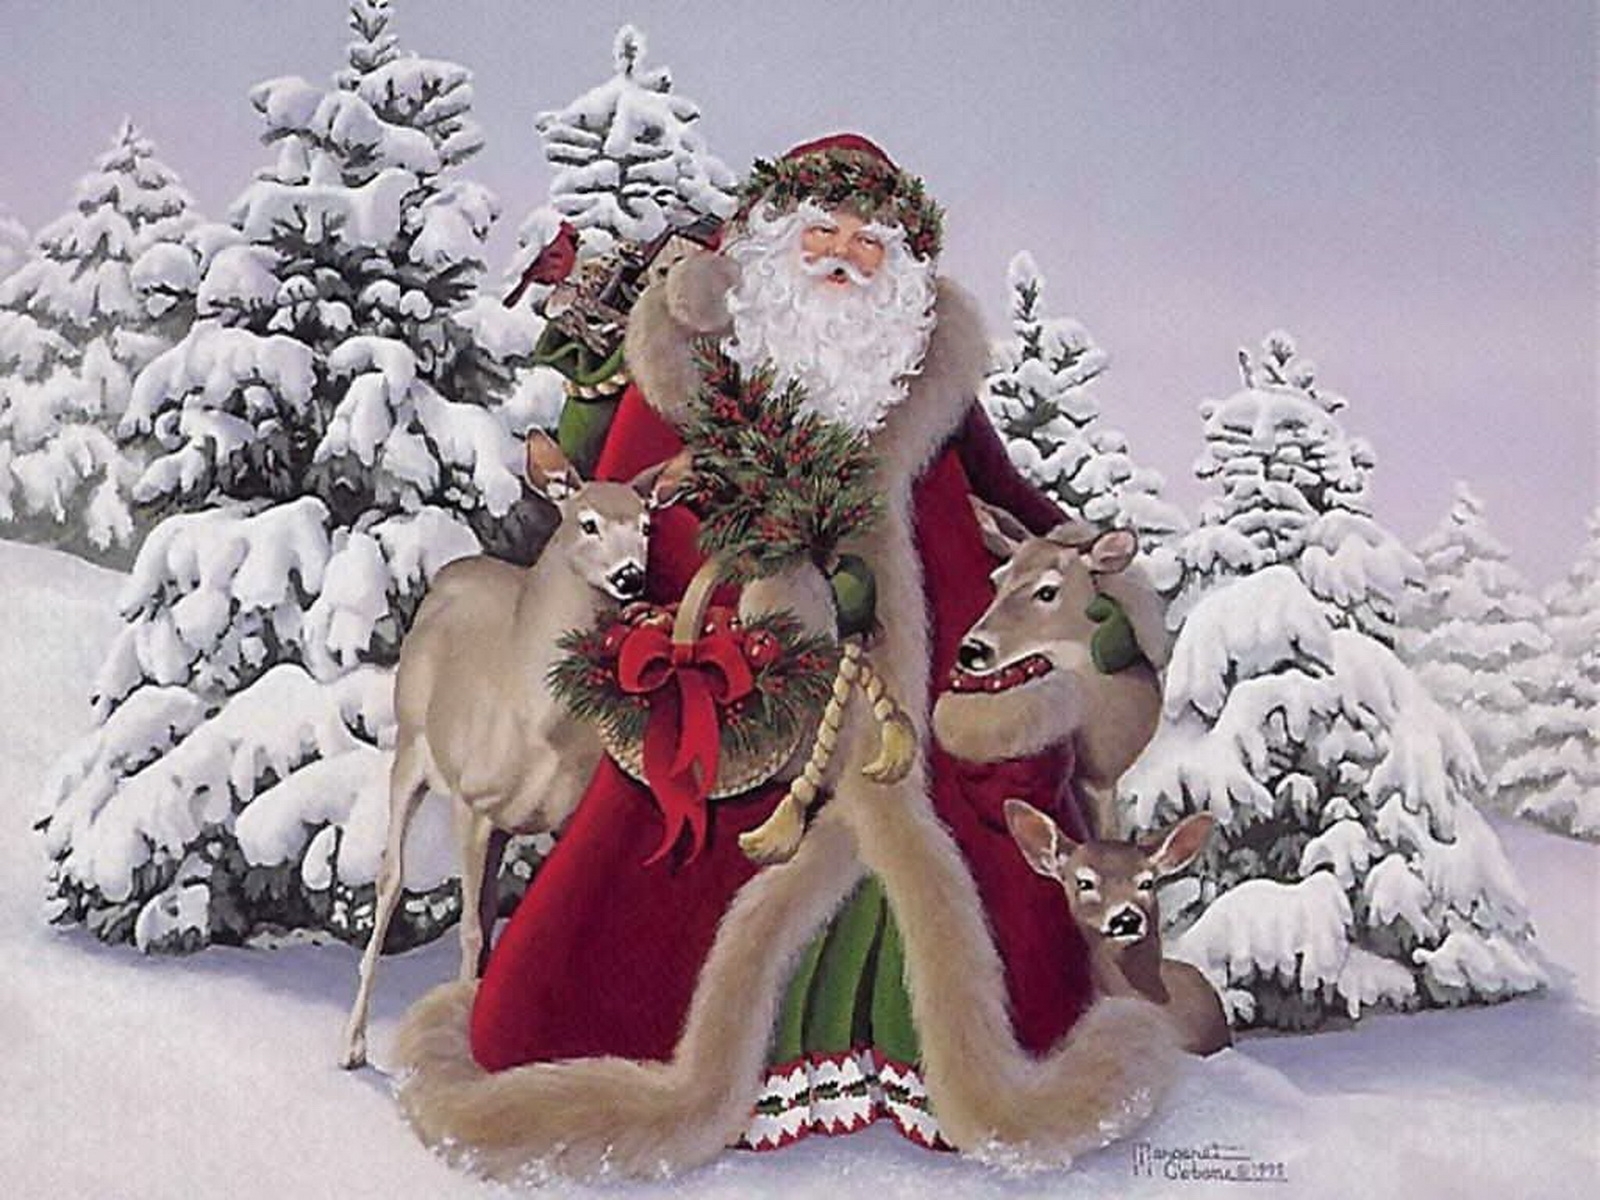 Скачать обои Санта Клаус (Santa Claus) на телефон бесплатно